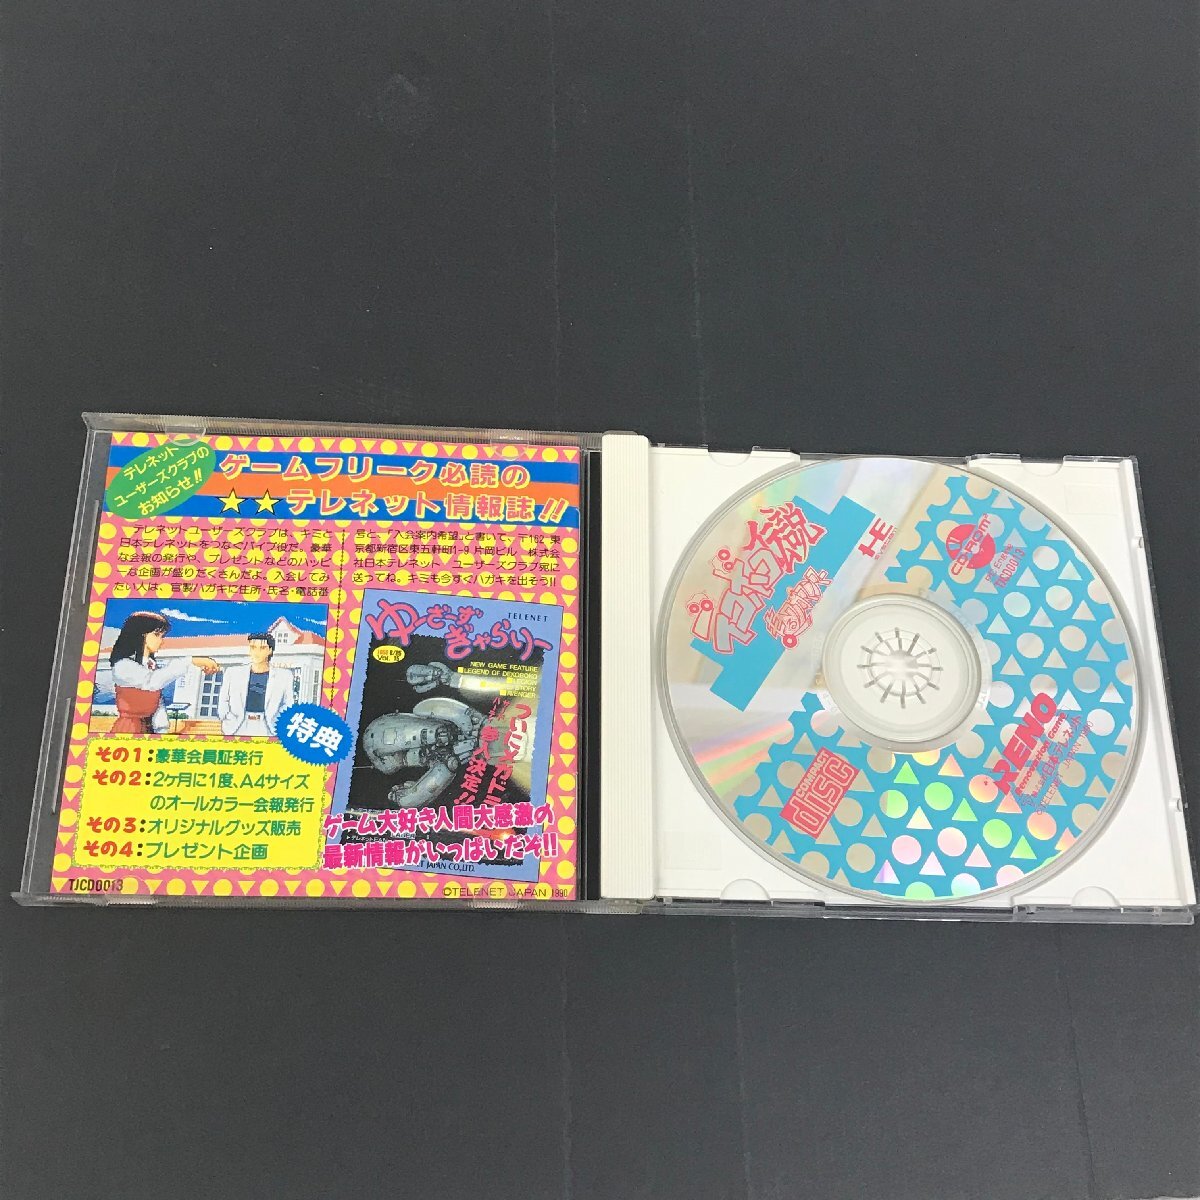 PCエンジン CD・ROM2 SYSTEM デコボコ伝説 ユーズド_画像3